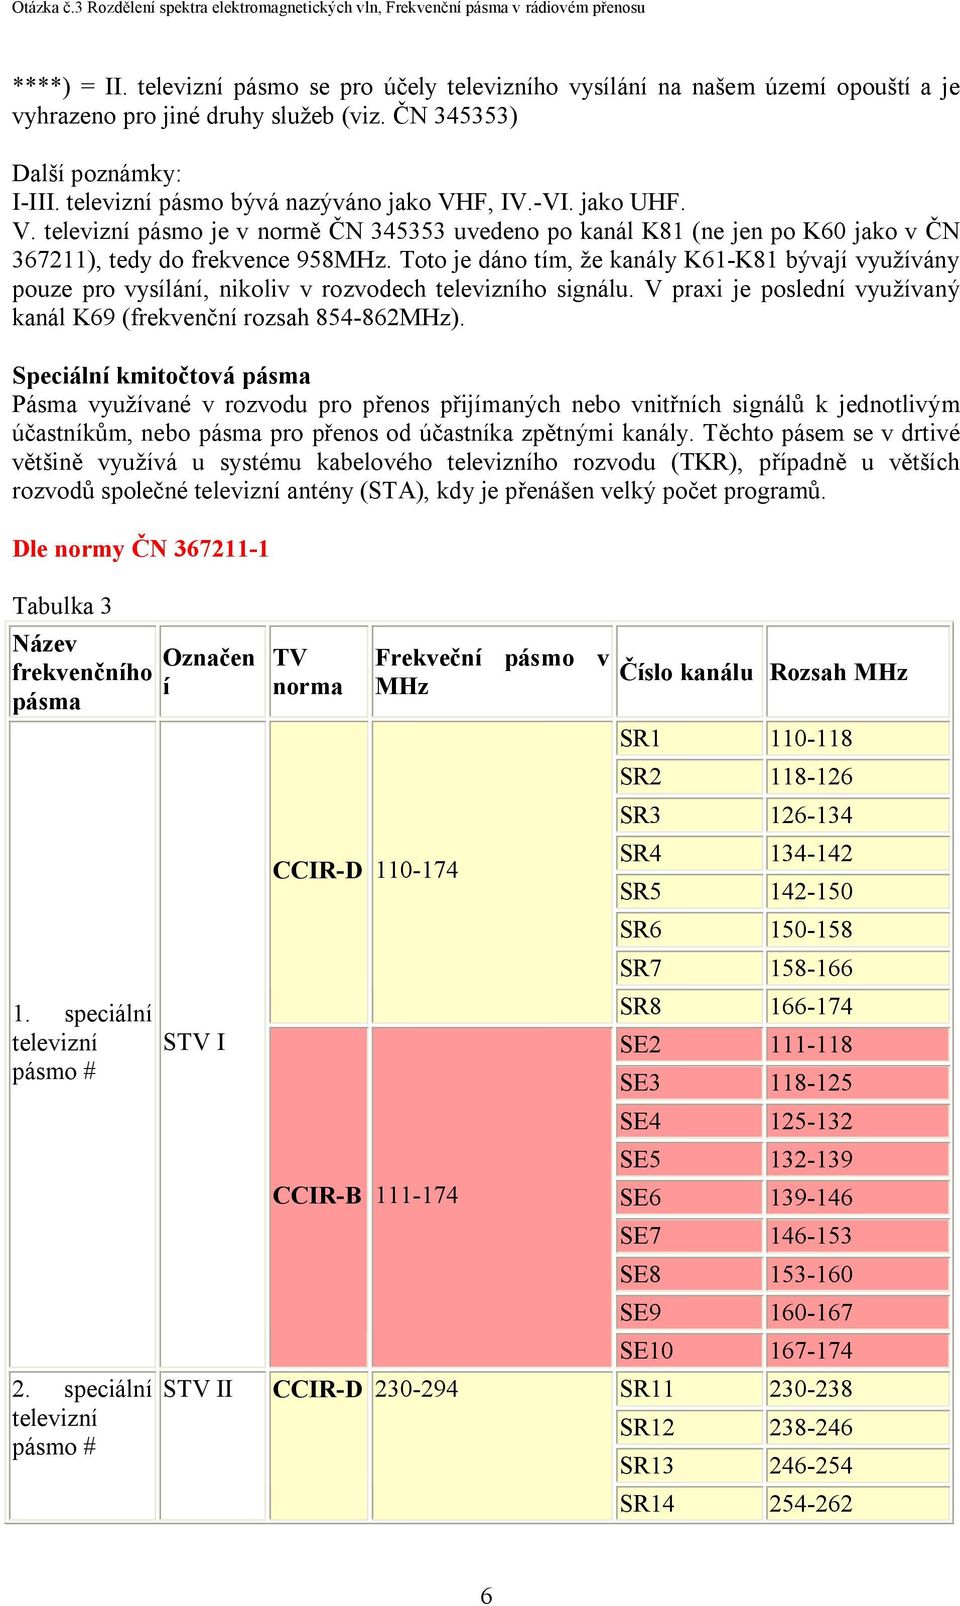 Toto je dáno tím, že kanály K61-K81 bývají využívány pouze pro vysílání, nikoliv v rozvodech televizního signálu. V praxi je poslední využívaný kanál K69 (frekvenční rozsah 854-862MHz).